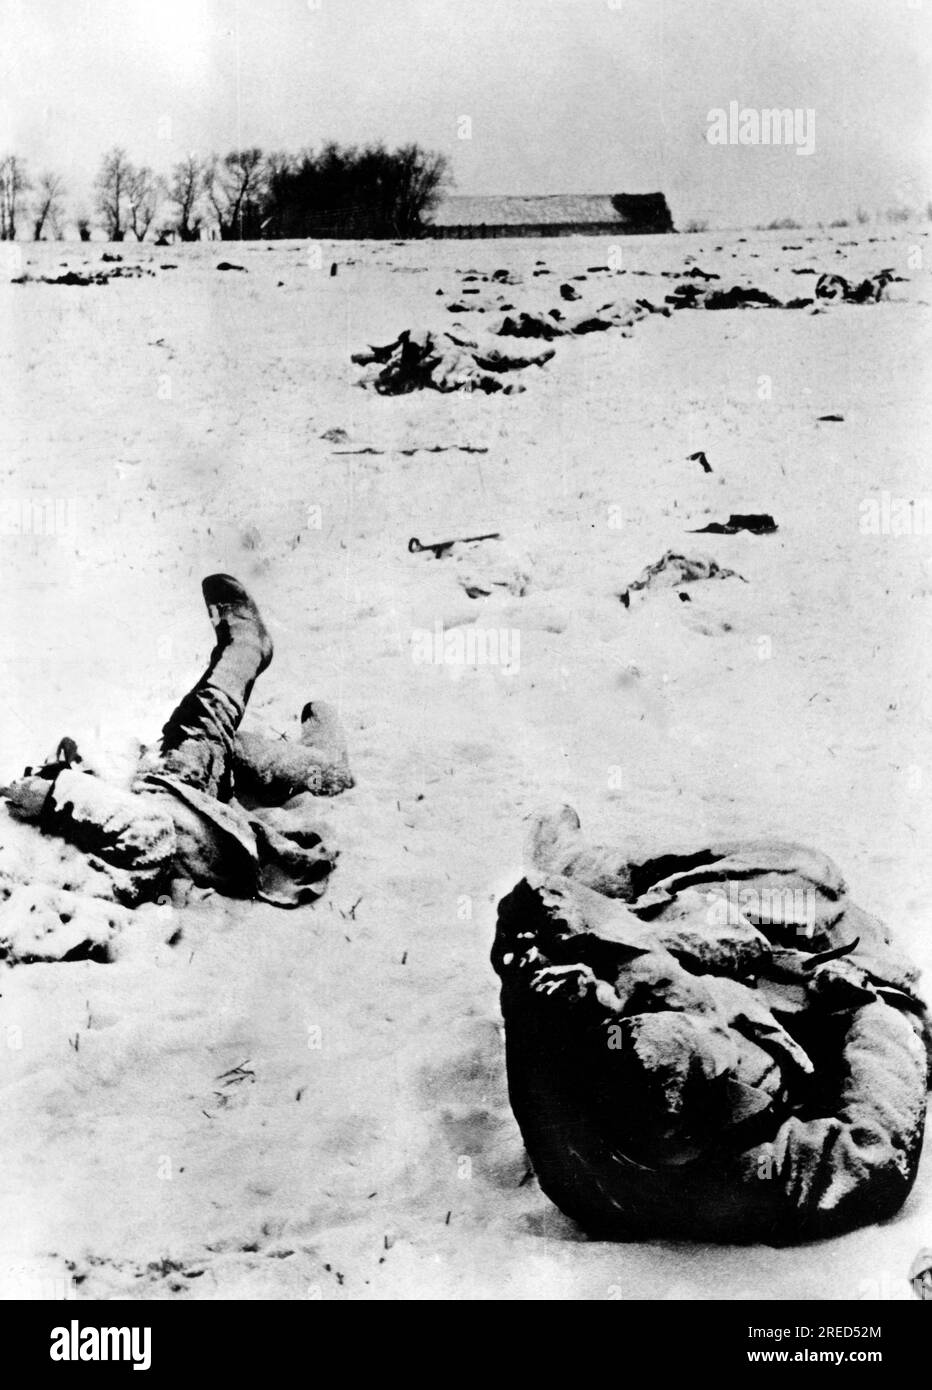 Soldati russi morti di fronte a una posizione tedesca, probabilmente nella sezione centrale del fronte orientale. Foto: Kraayvanger. [traduzione automatica] Foto Stock